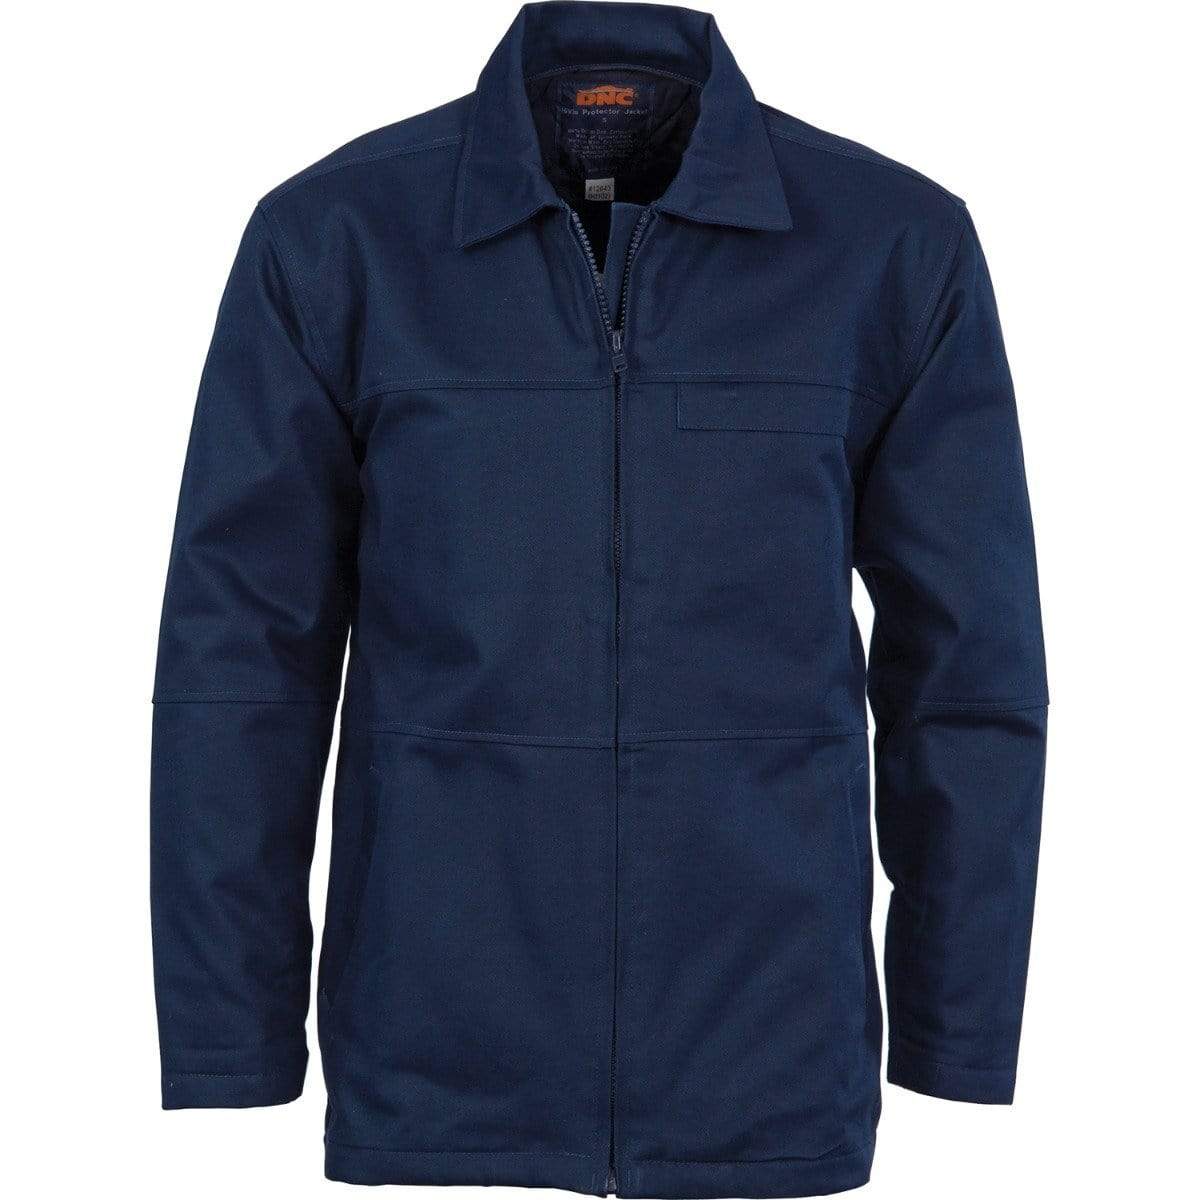 DNC WORKWEAR Protector Cotton Jacket 3606 - Simply Scrubs Australia